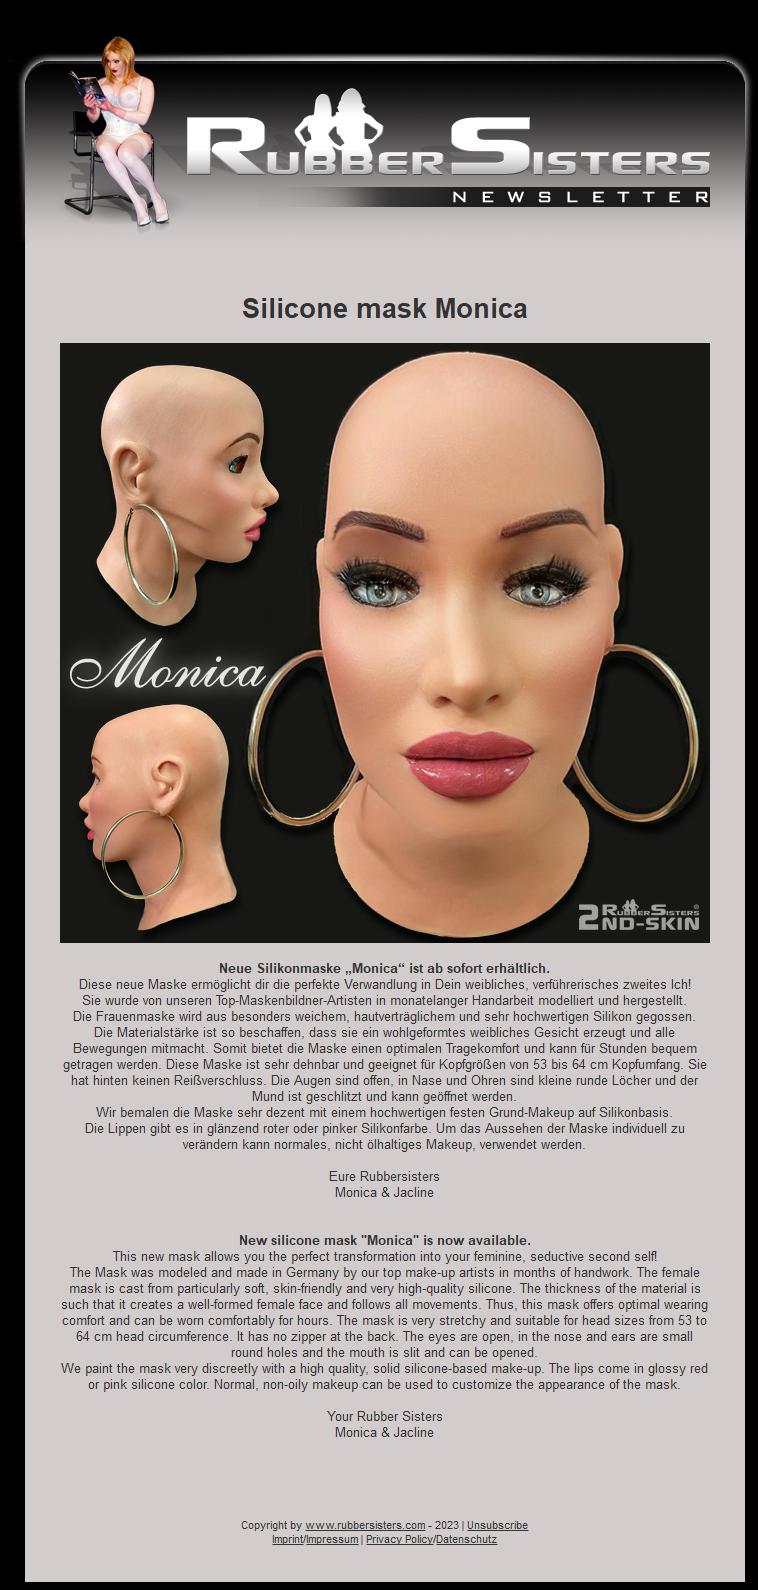 Rubbersisters / 2nd-skin - News 02/2023 - Monica Mask